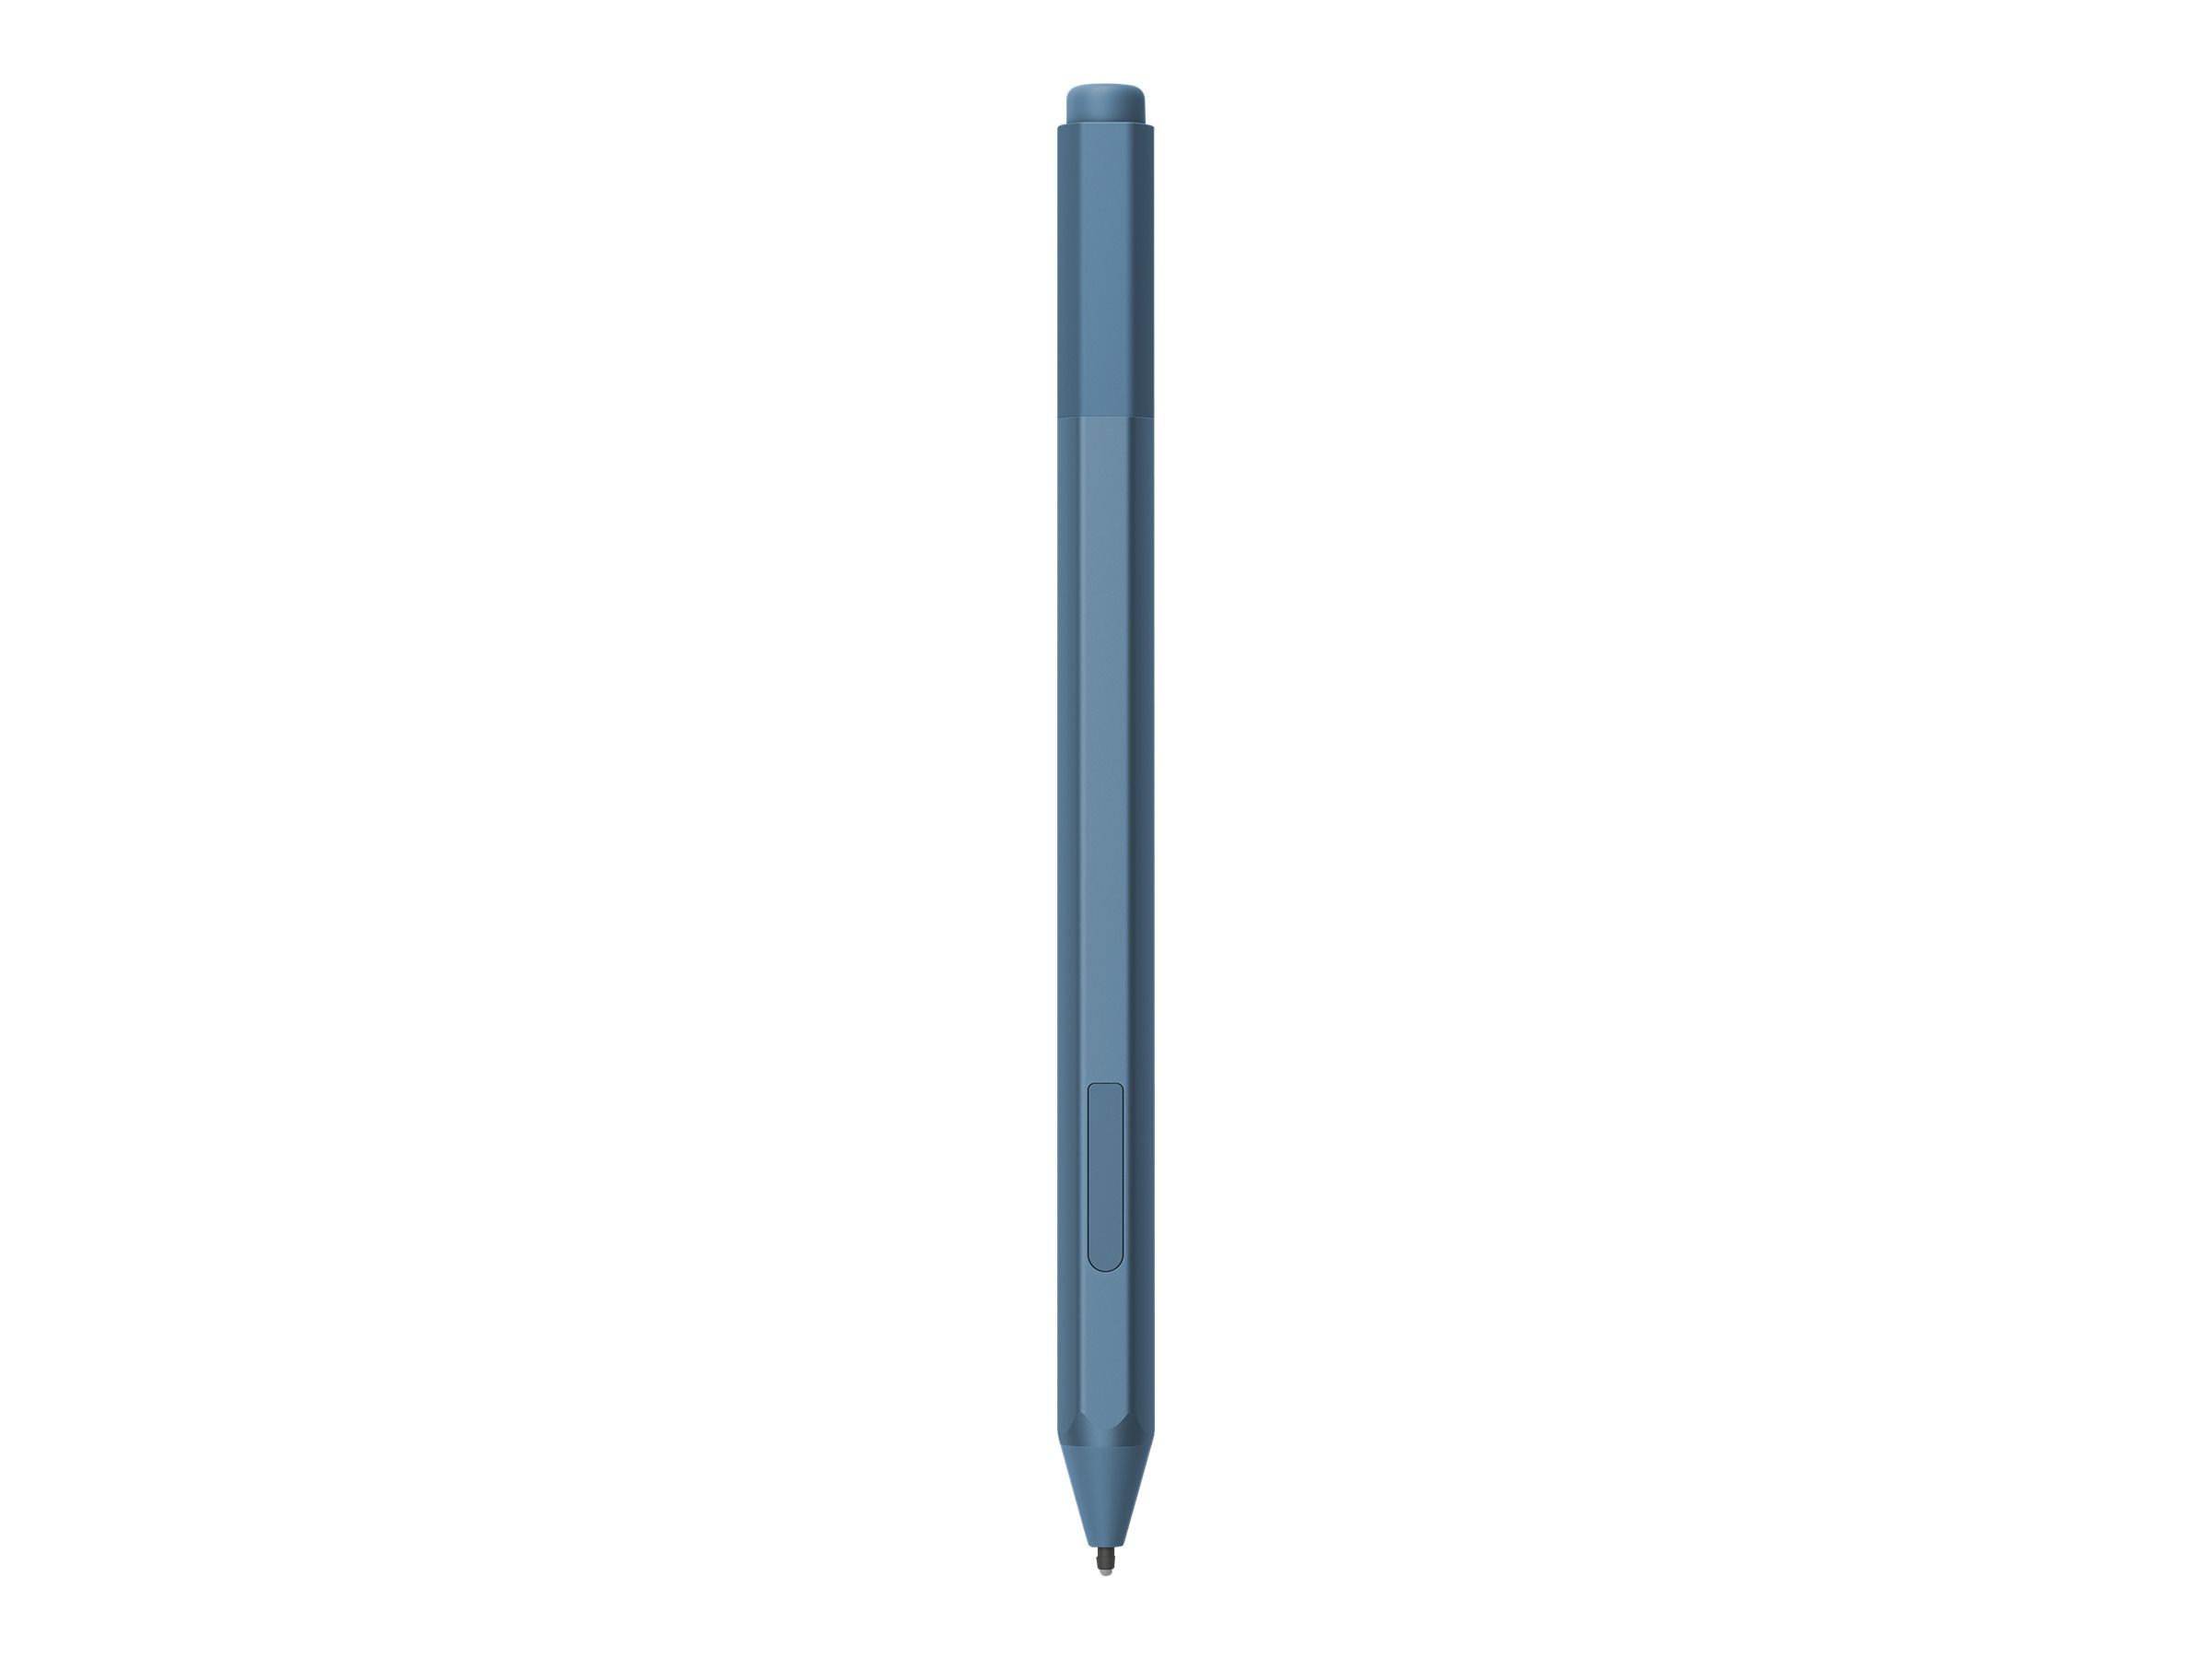 Microsoft Surface Pen M1776 - Stylet actif - 2 boutons - Bluetooth 4.0 - bleu iceberg - commercial - pour Surface Book 3, Go 2, Go 3, Go 4, Laptop 3, Laptop 4, Laptop 5, Pro 7, Pro 7+, Studio 2+ - EYV-00050 - Dispositifs de pointage